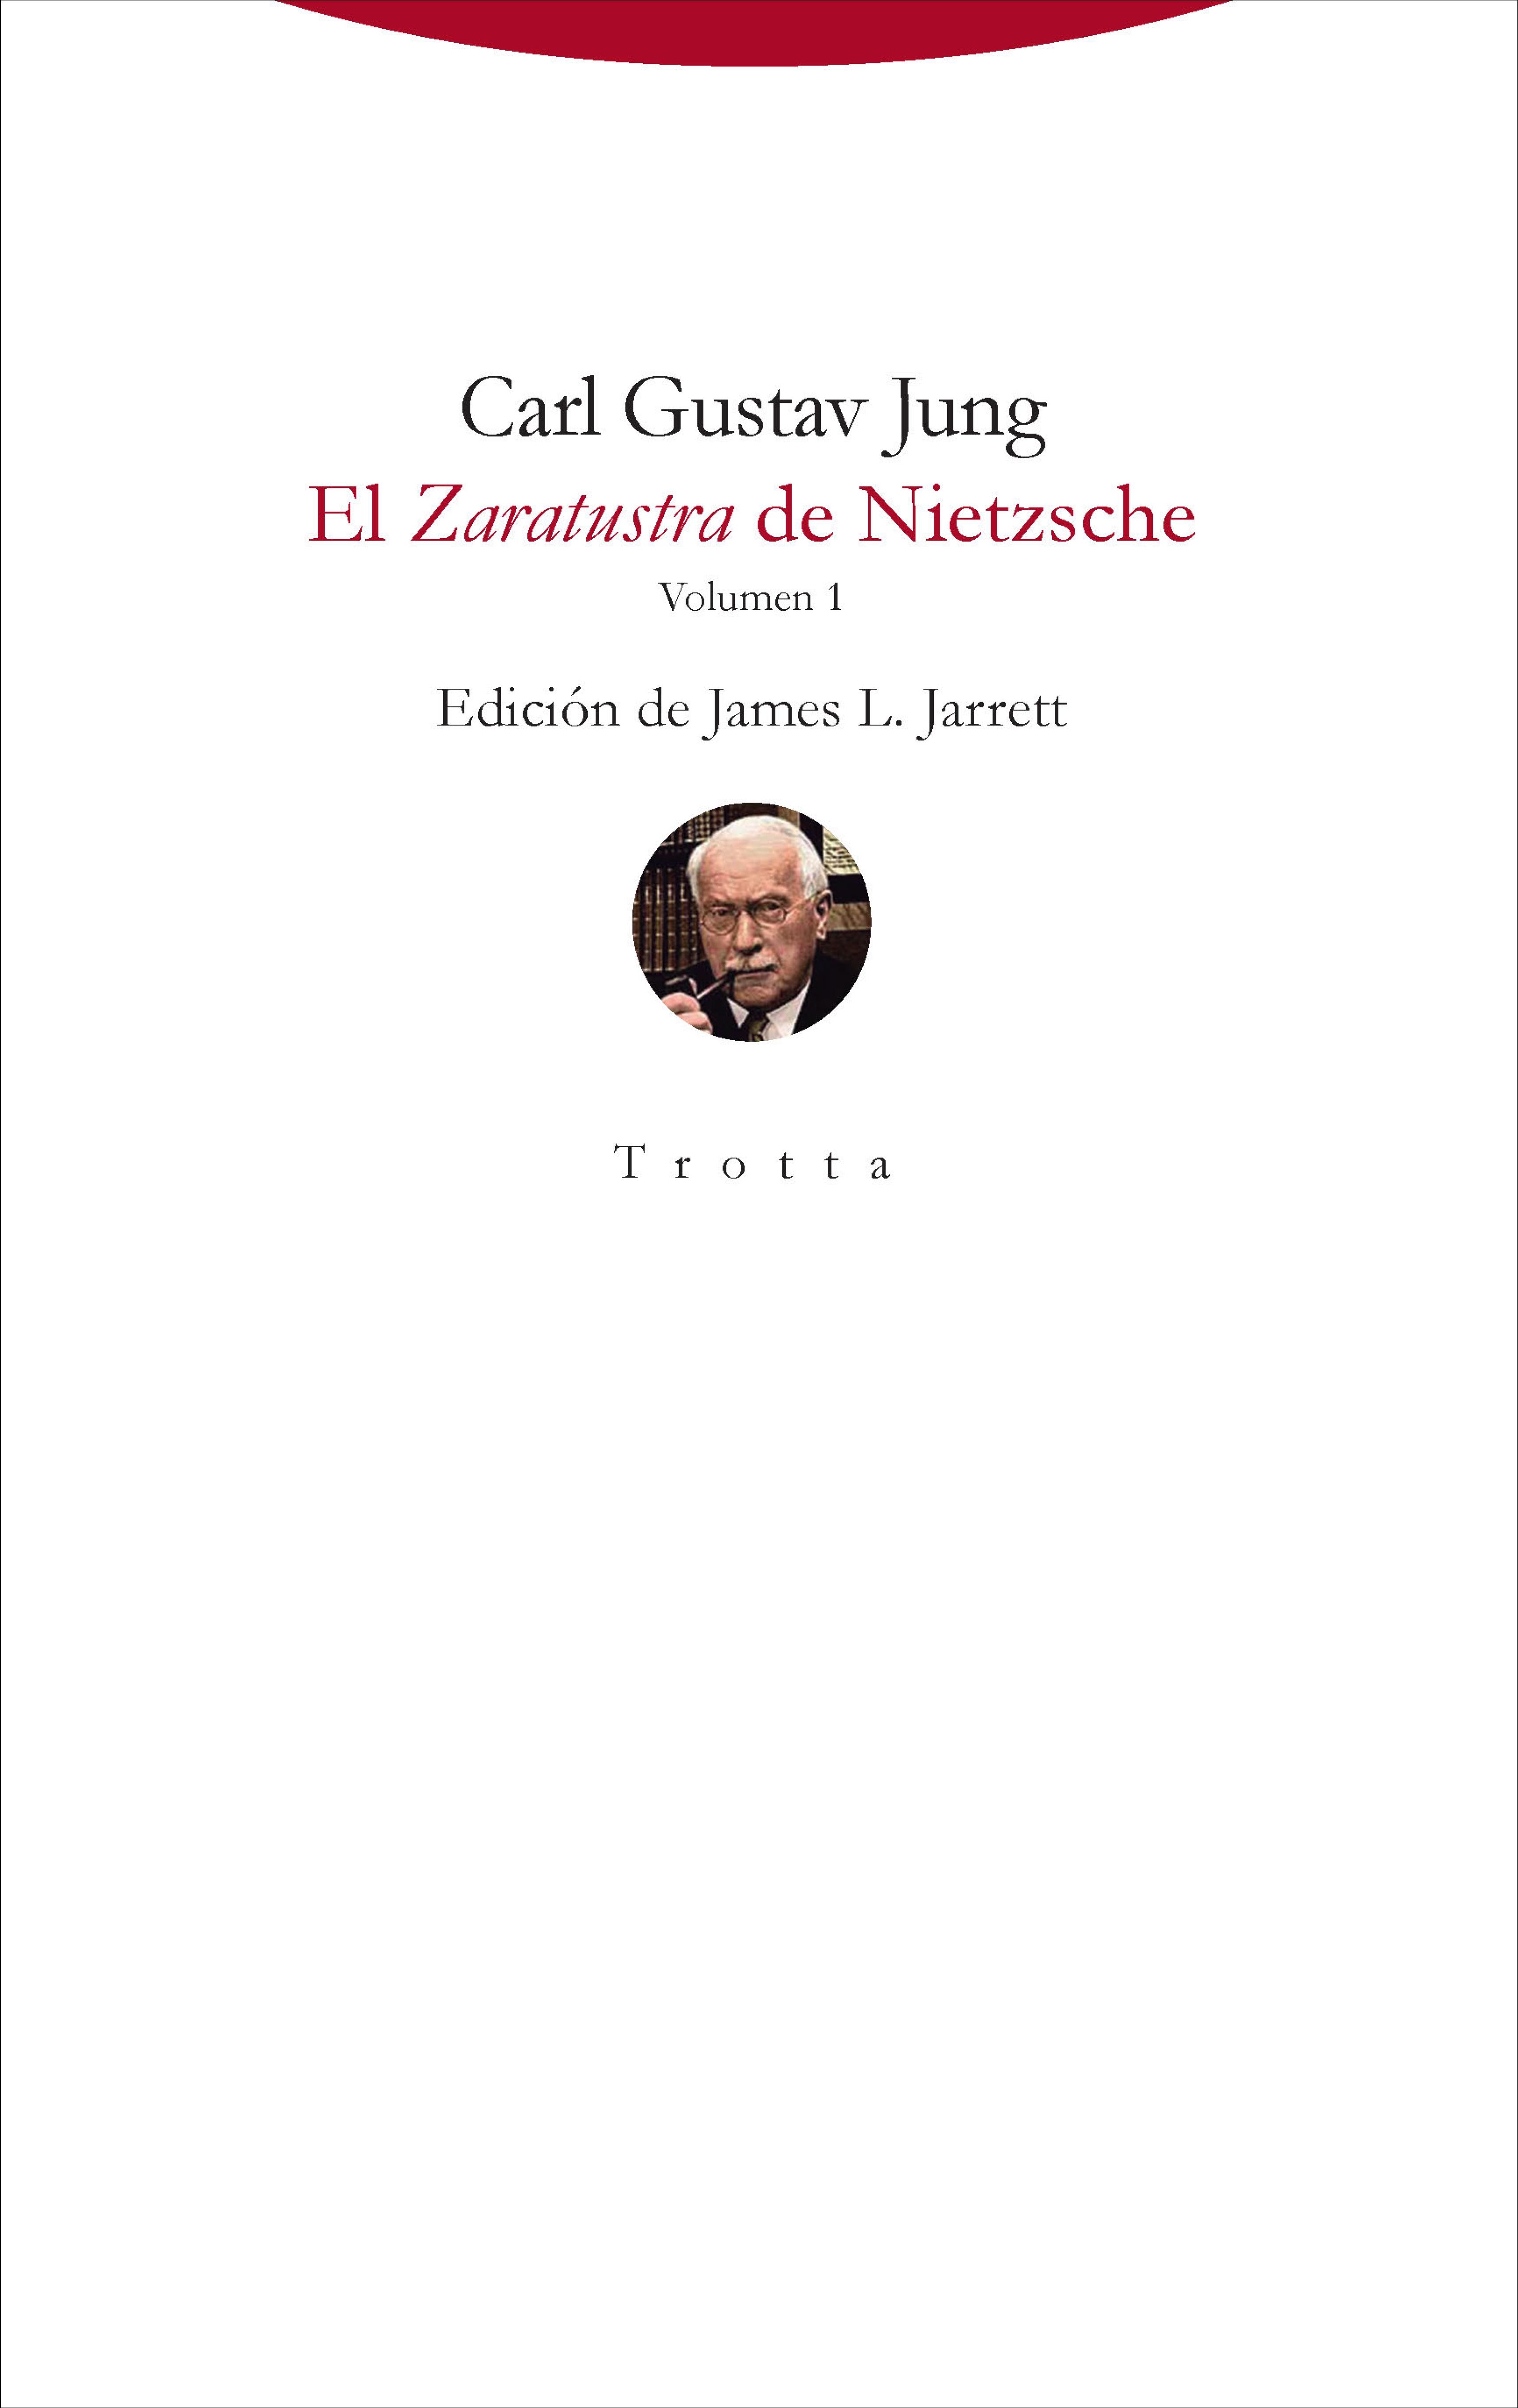 El Zaratustra de Nietzsche "Volumen 1". 